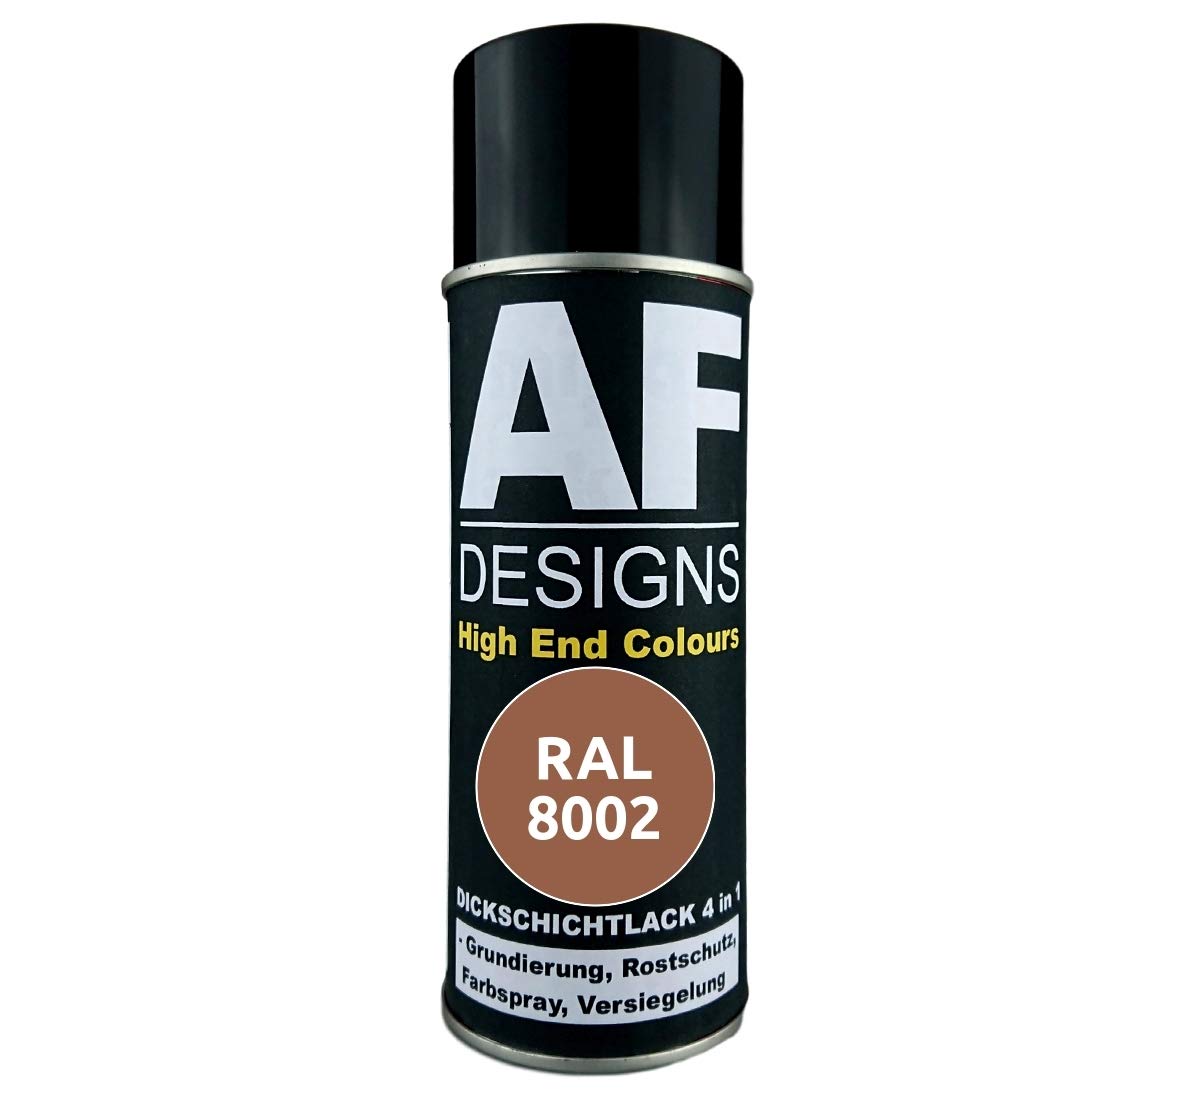 4 in 1 RAL 8002 Signalbraun Dickschichtlack Lack Spray Spraydose von Alex Flittner Designs